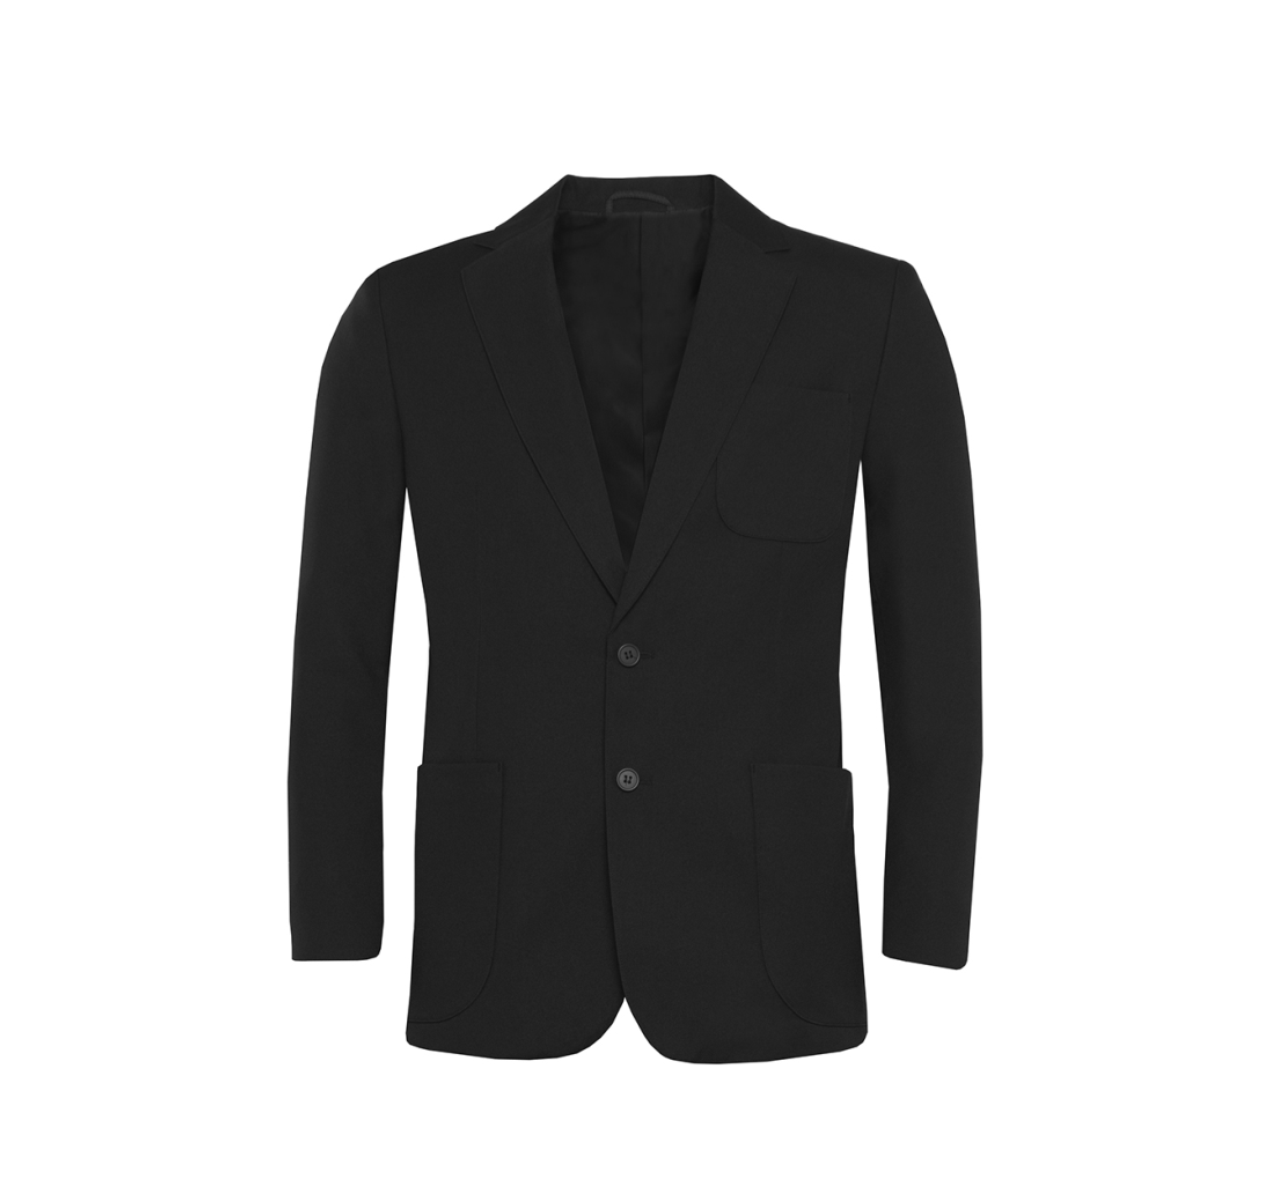 Boys Classic Black Blazer - Schoolwear Solutions